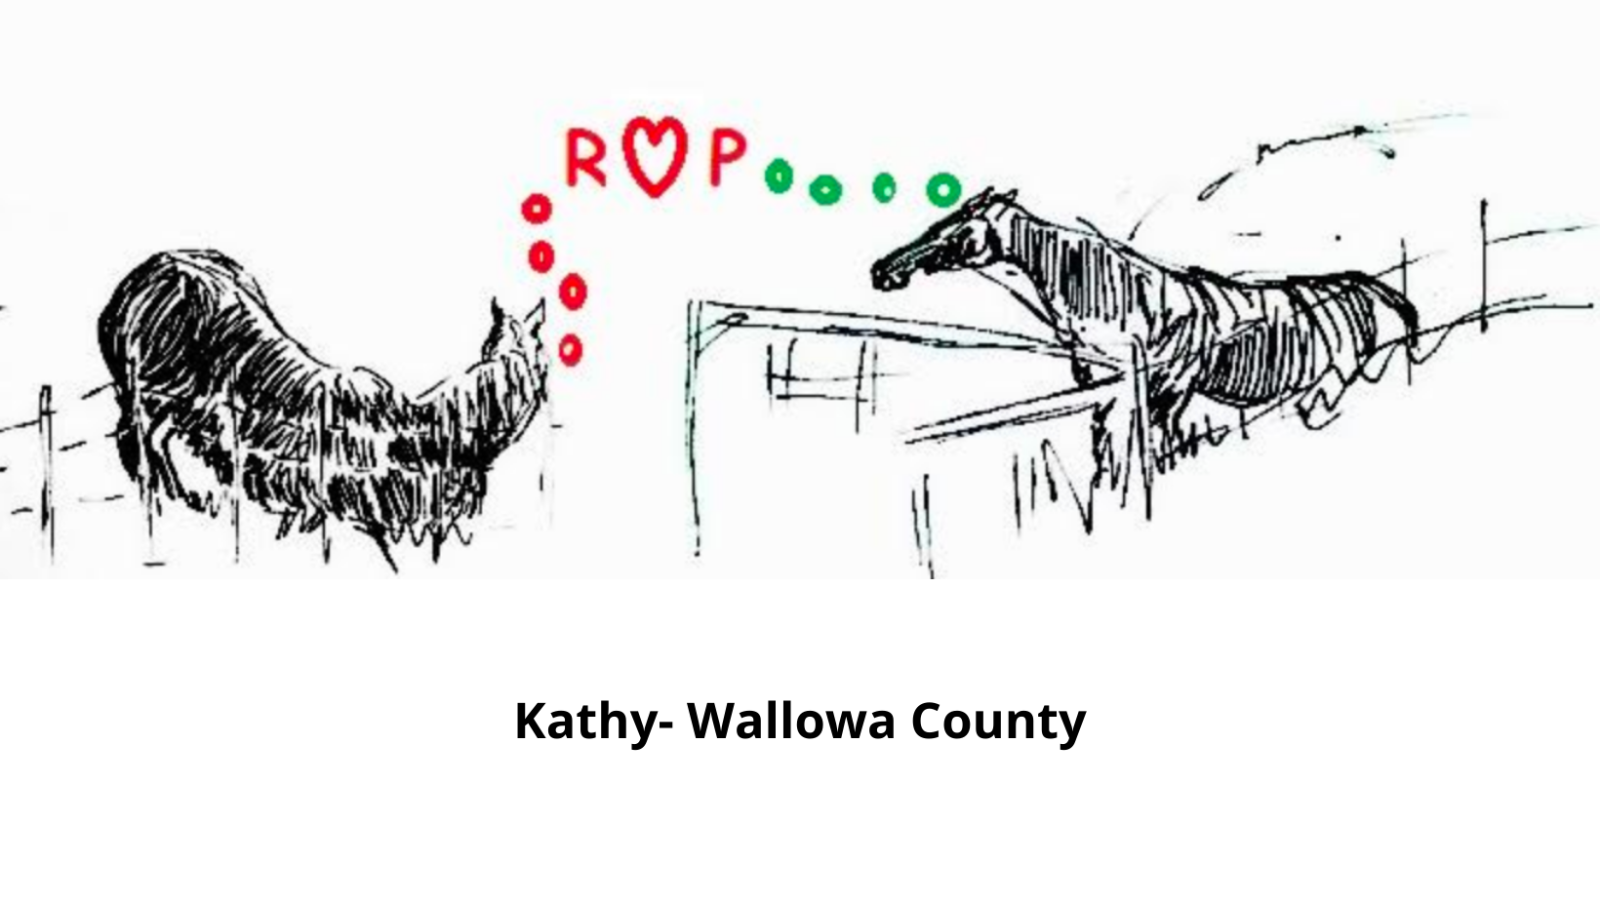 Wallowa 카운티의 Kathy에서 온 두 마리의 말 그림으로 ROP라는 글자가 있으며 여기서 "O"는 하트 모양입니다.